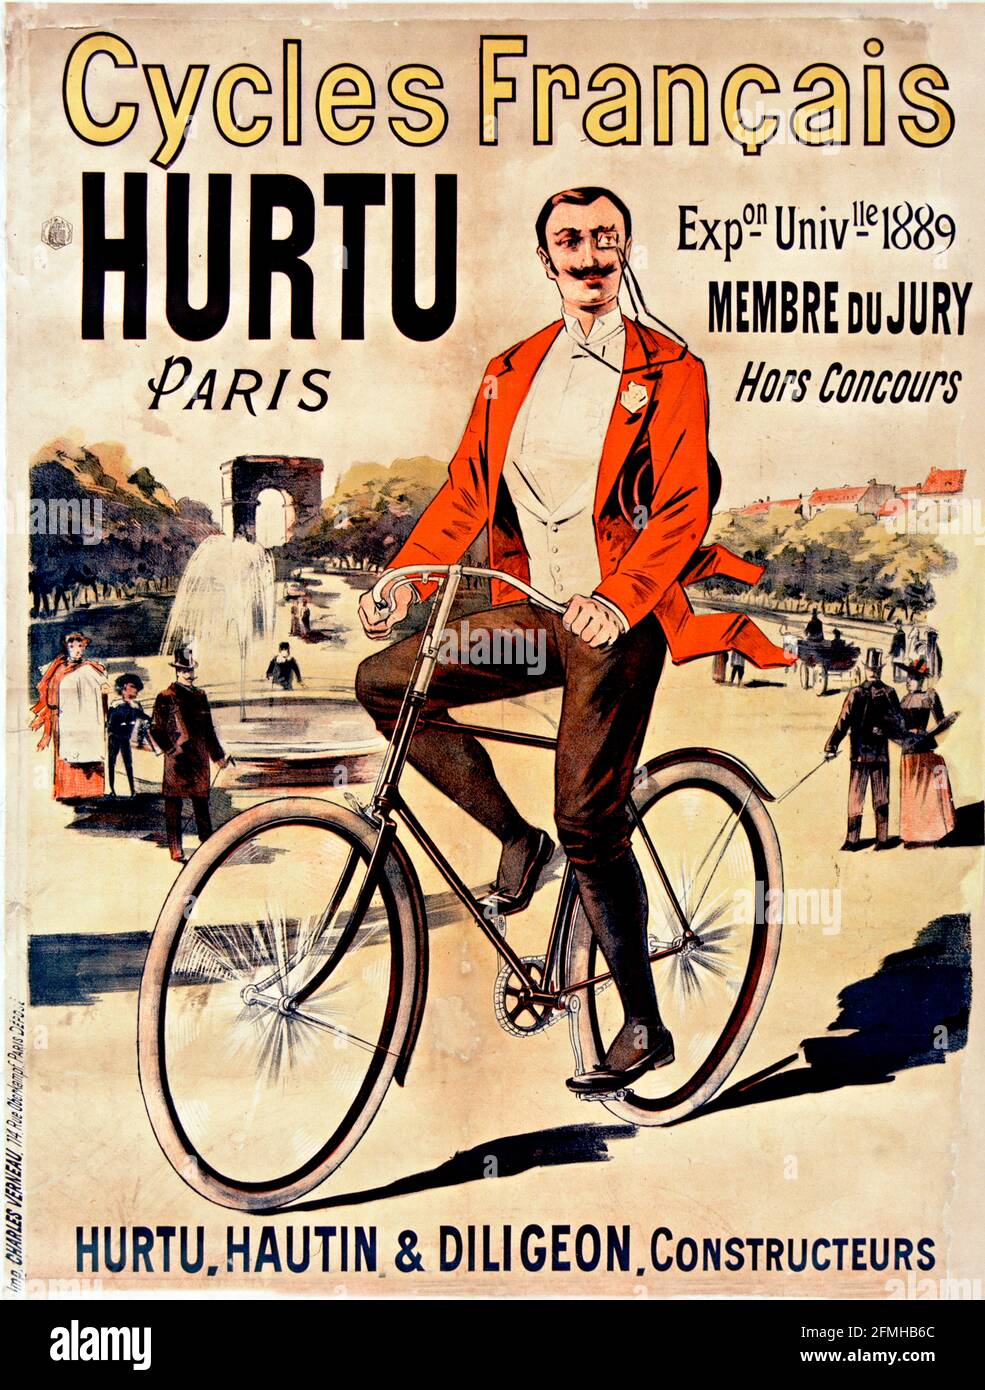 Eugène Ogé - cicli Français Hurtu 1889. Poster della pubblicità sulla bicicletta. Vecchio e vintage. Ottimizzato digitalmente. Risoluzione molto alta. Foto Stock